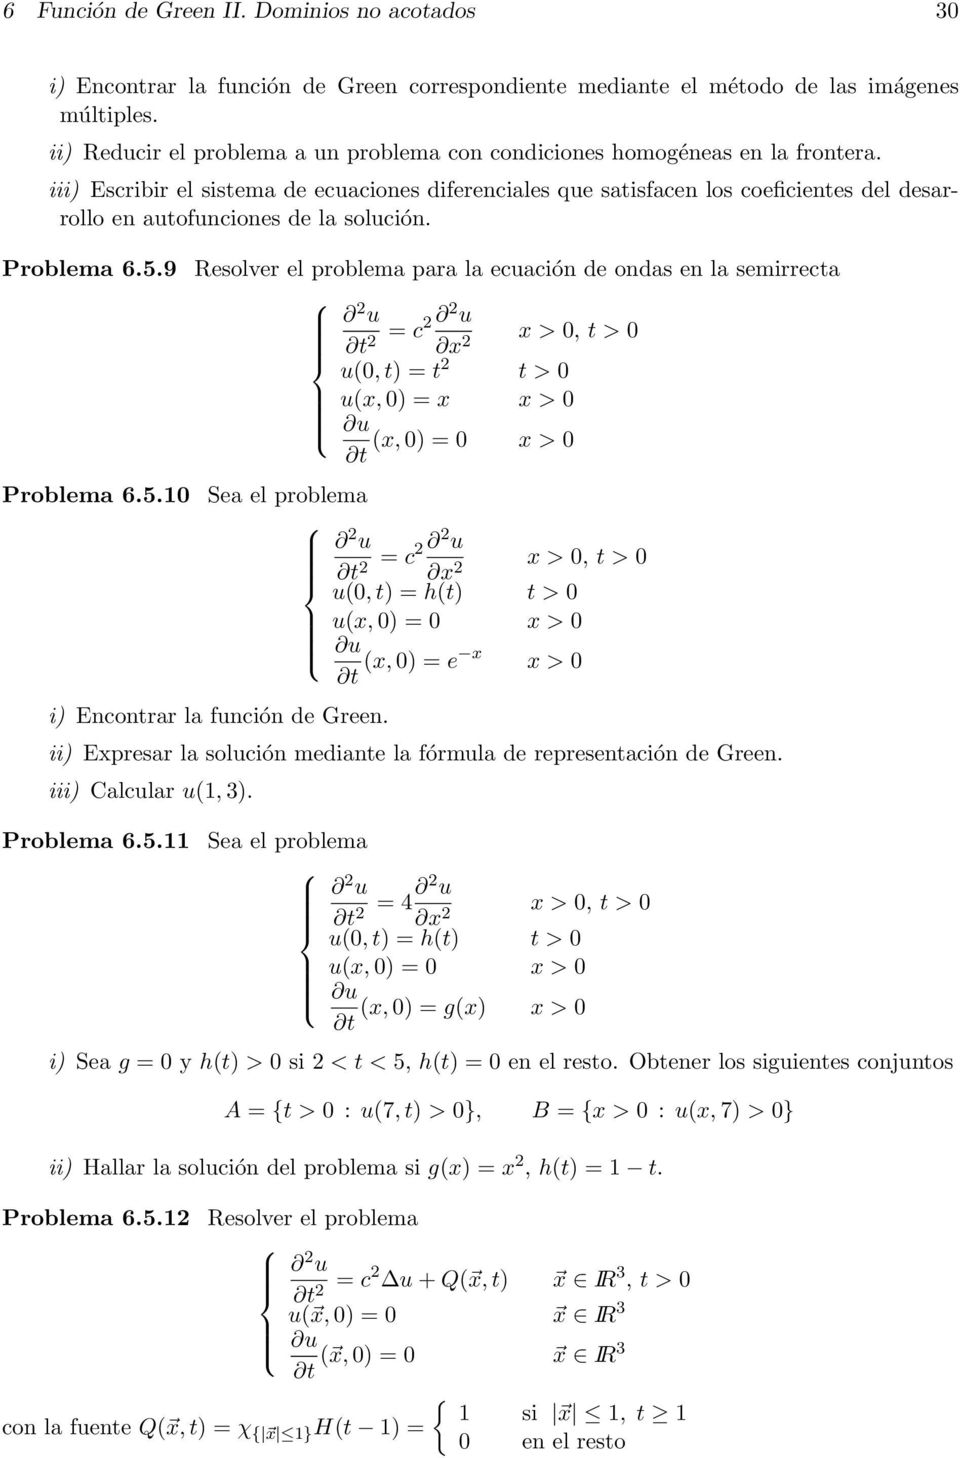 iii) Escribir el sistema de ecuaciones diferenciales que satisfacen los coeficientes del desarrollo en autofunciones de la solución. Problema 6.5.